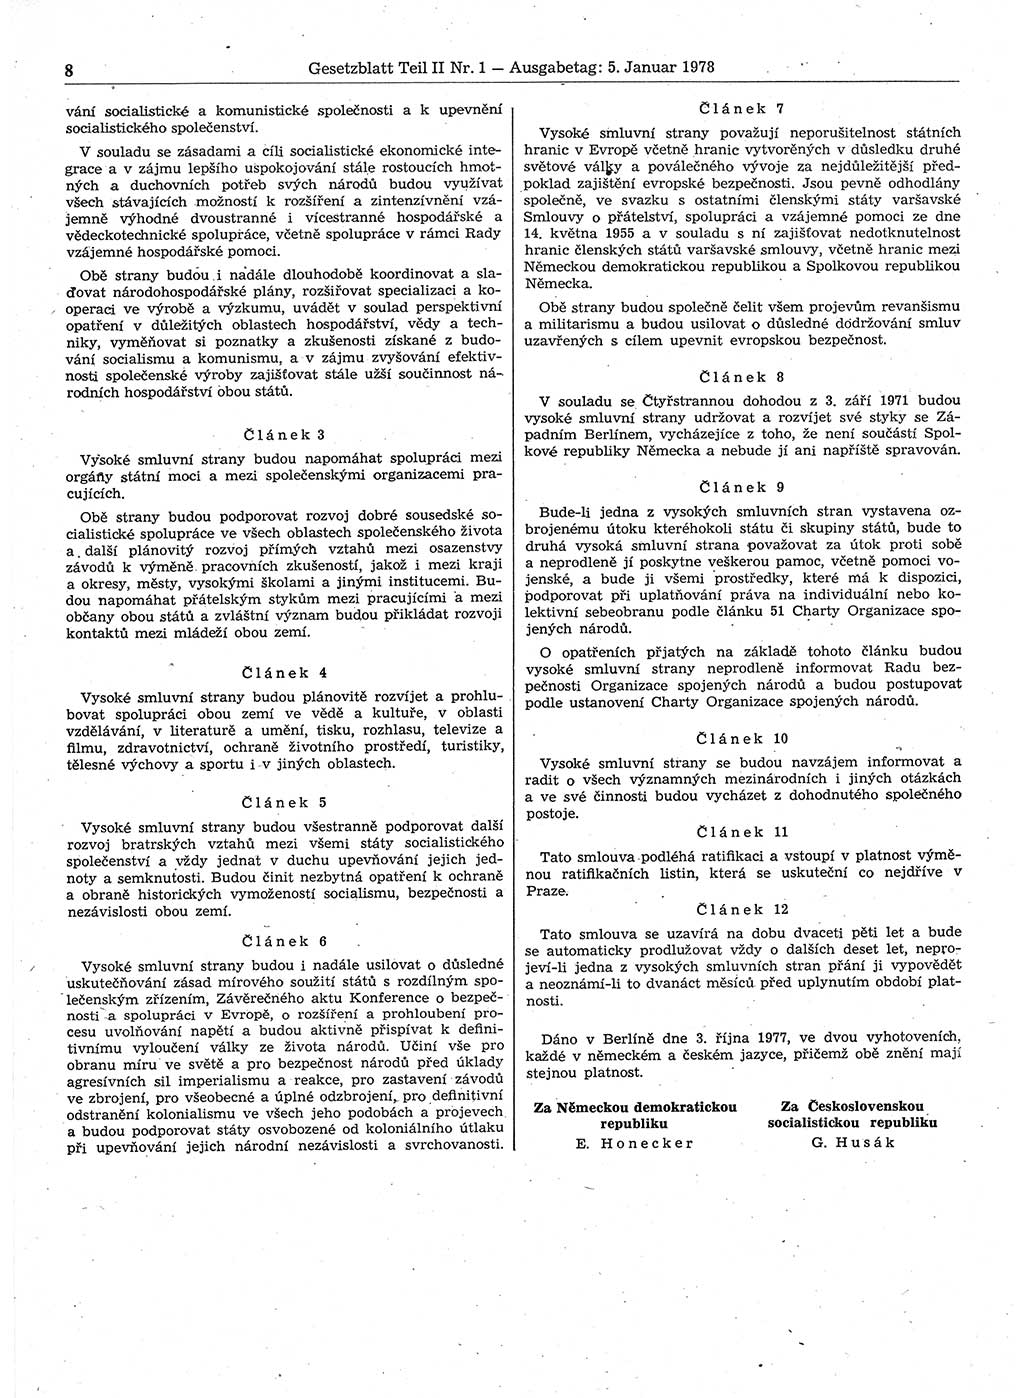 Gesetzblatt (GBl.) der Deutschen Demokratischen Republik (DDR) Teil ⅠⅠ 1978, Seite 8 (GBl. DDR ⅠⅠ 1978, S. 8)